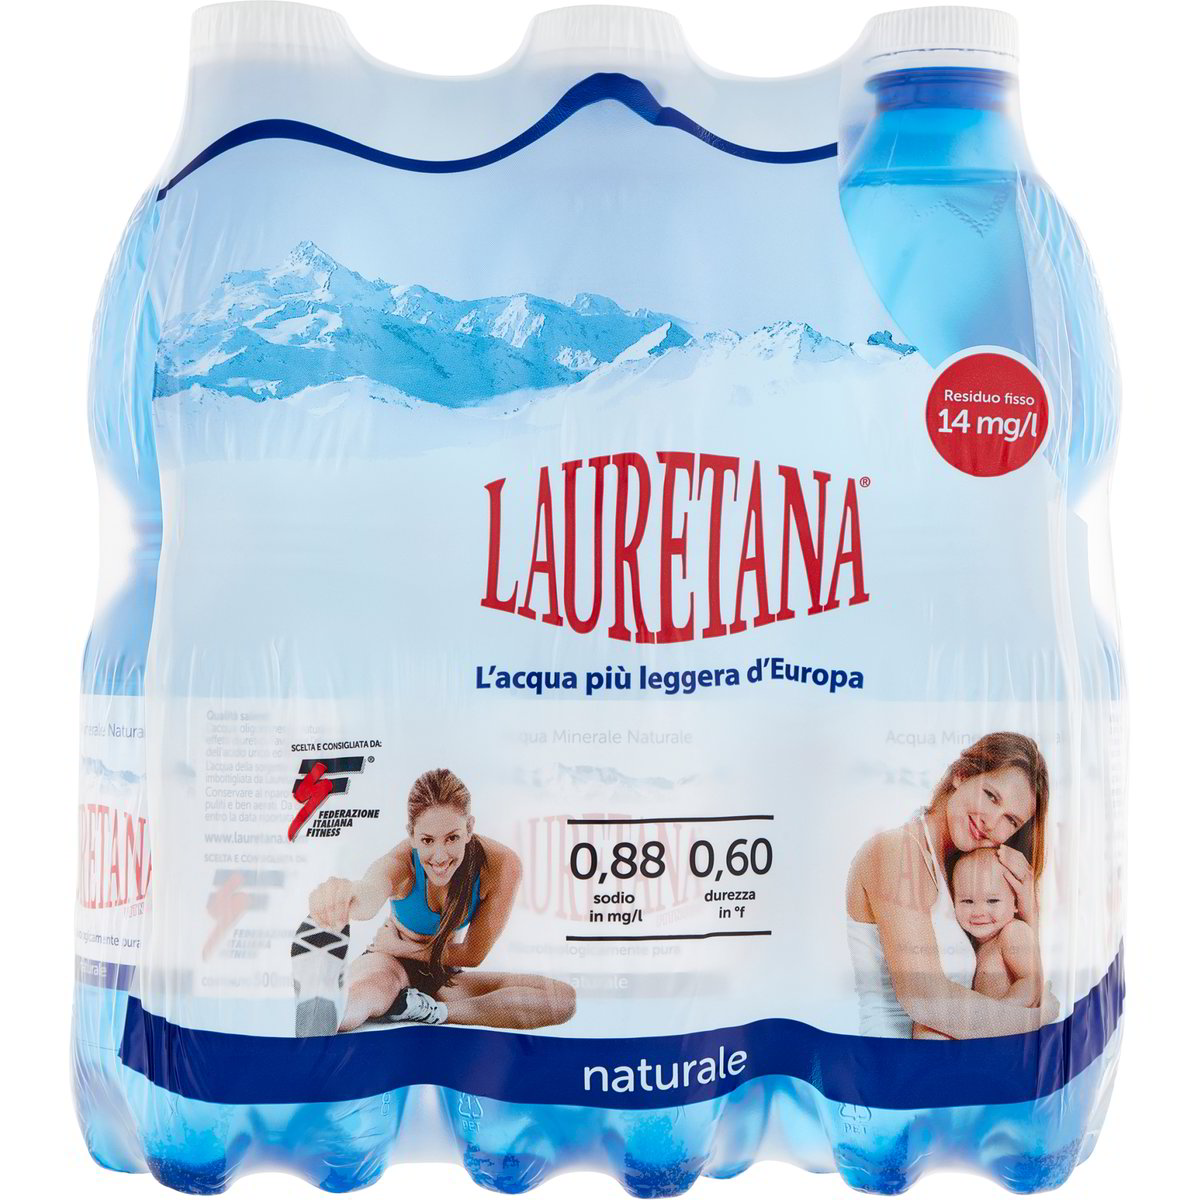 ACQUA NATURALE LAURETANA 6 bottiglie GRANDI da 1,5 l in dettaglio,  lauretana naturale